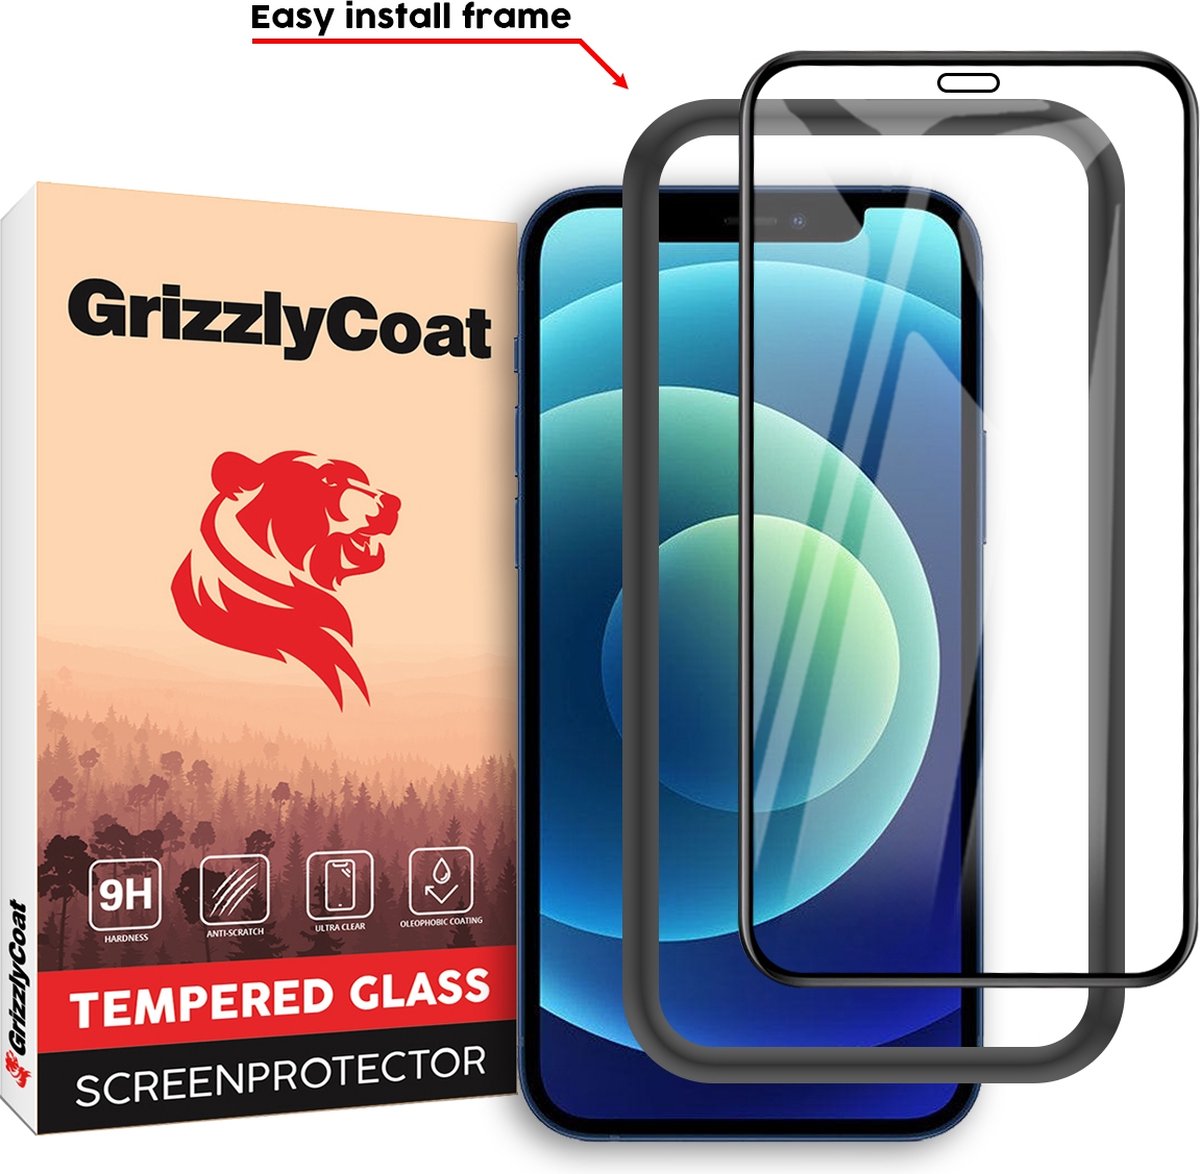 GrizzlyCoat Easy Fit Screenprotector geschikt voor Apple iPhone 12 Glazen Screenprotector - Case Friendly + Installatie Frame - Zwart